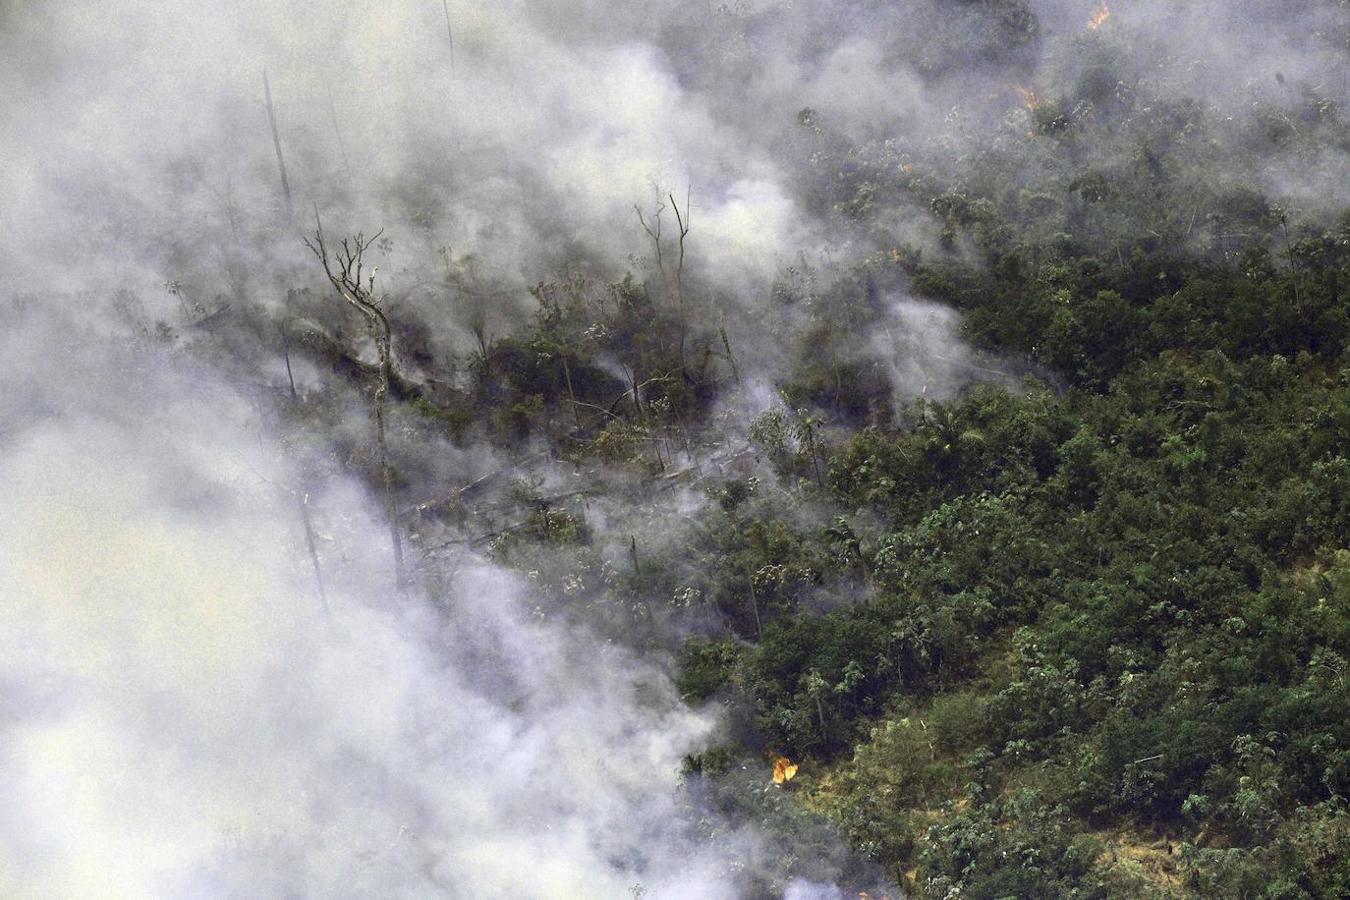 Los efectos de los incendios están causando graves problemas en regiones colindantes y del norte de Brasil, donde la niebla afectó a la navegación en ríos y cancelación de vuelos. 